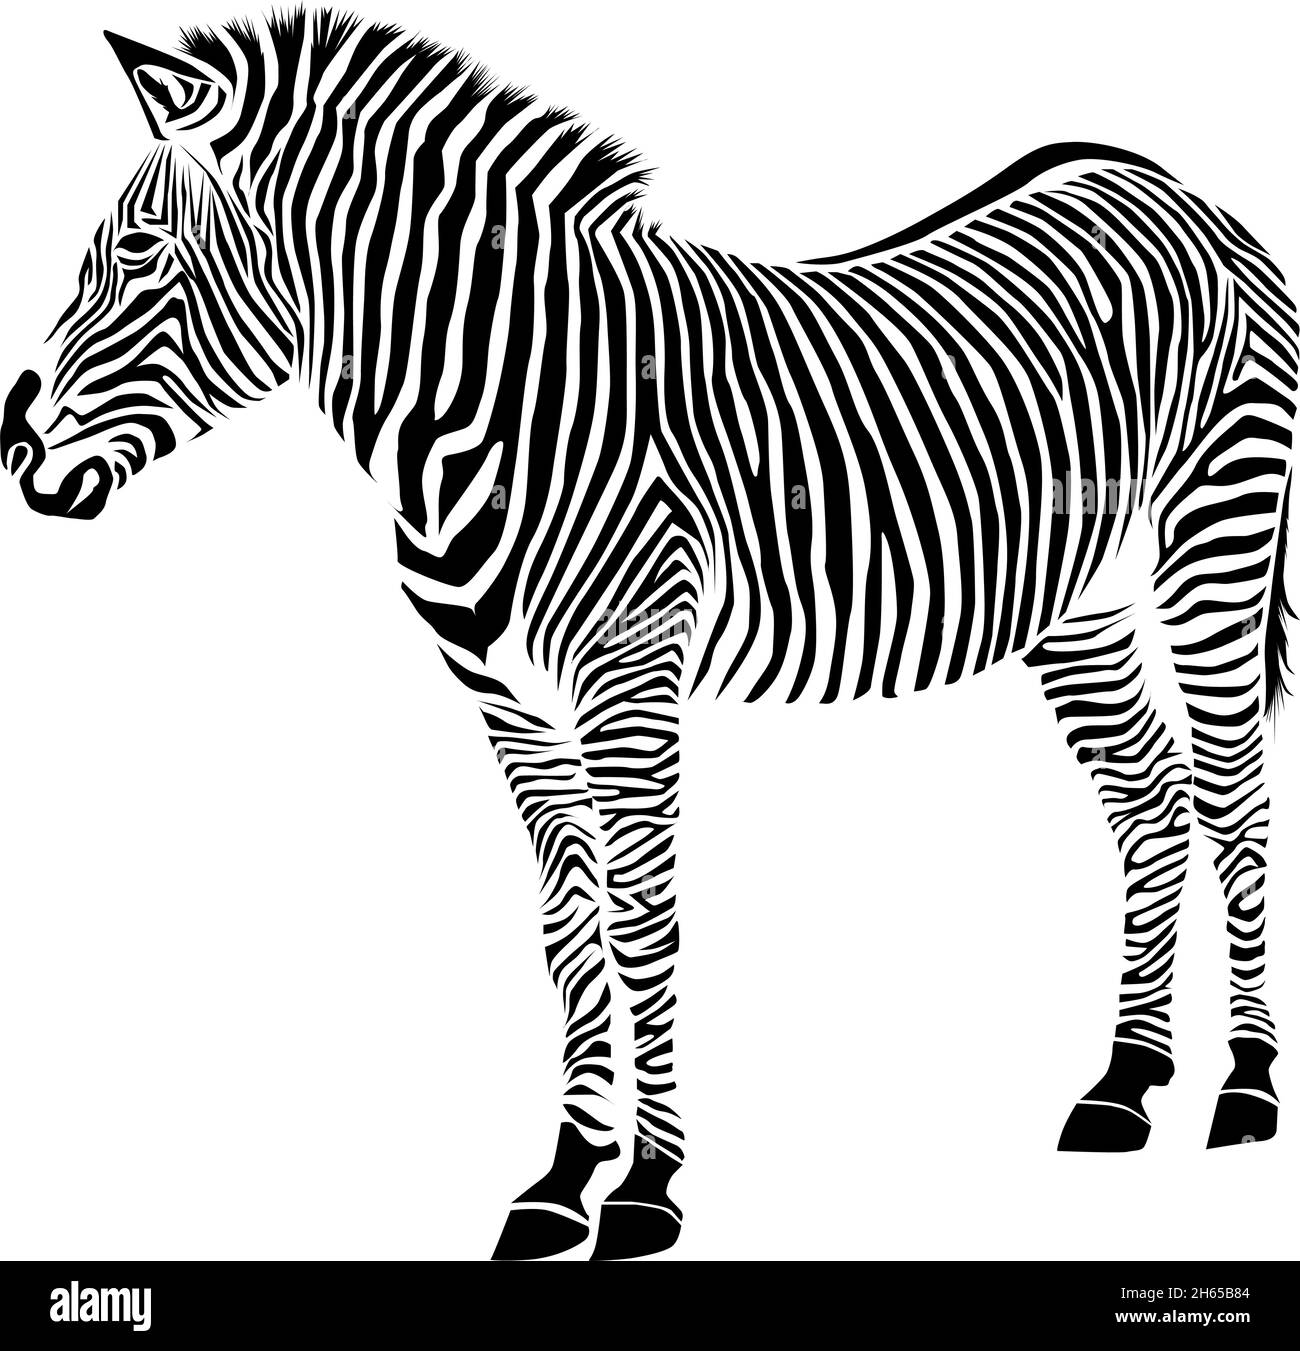 Zebra isolated on white background. Zebra Vector illustration. zebra pattern Stock Vector